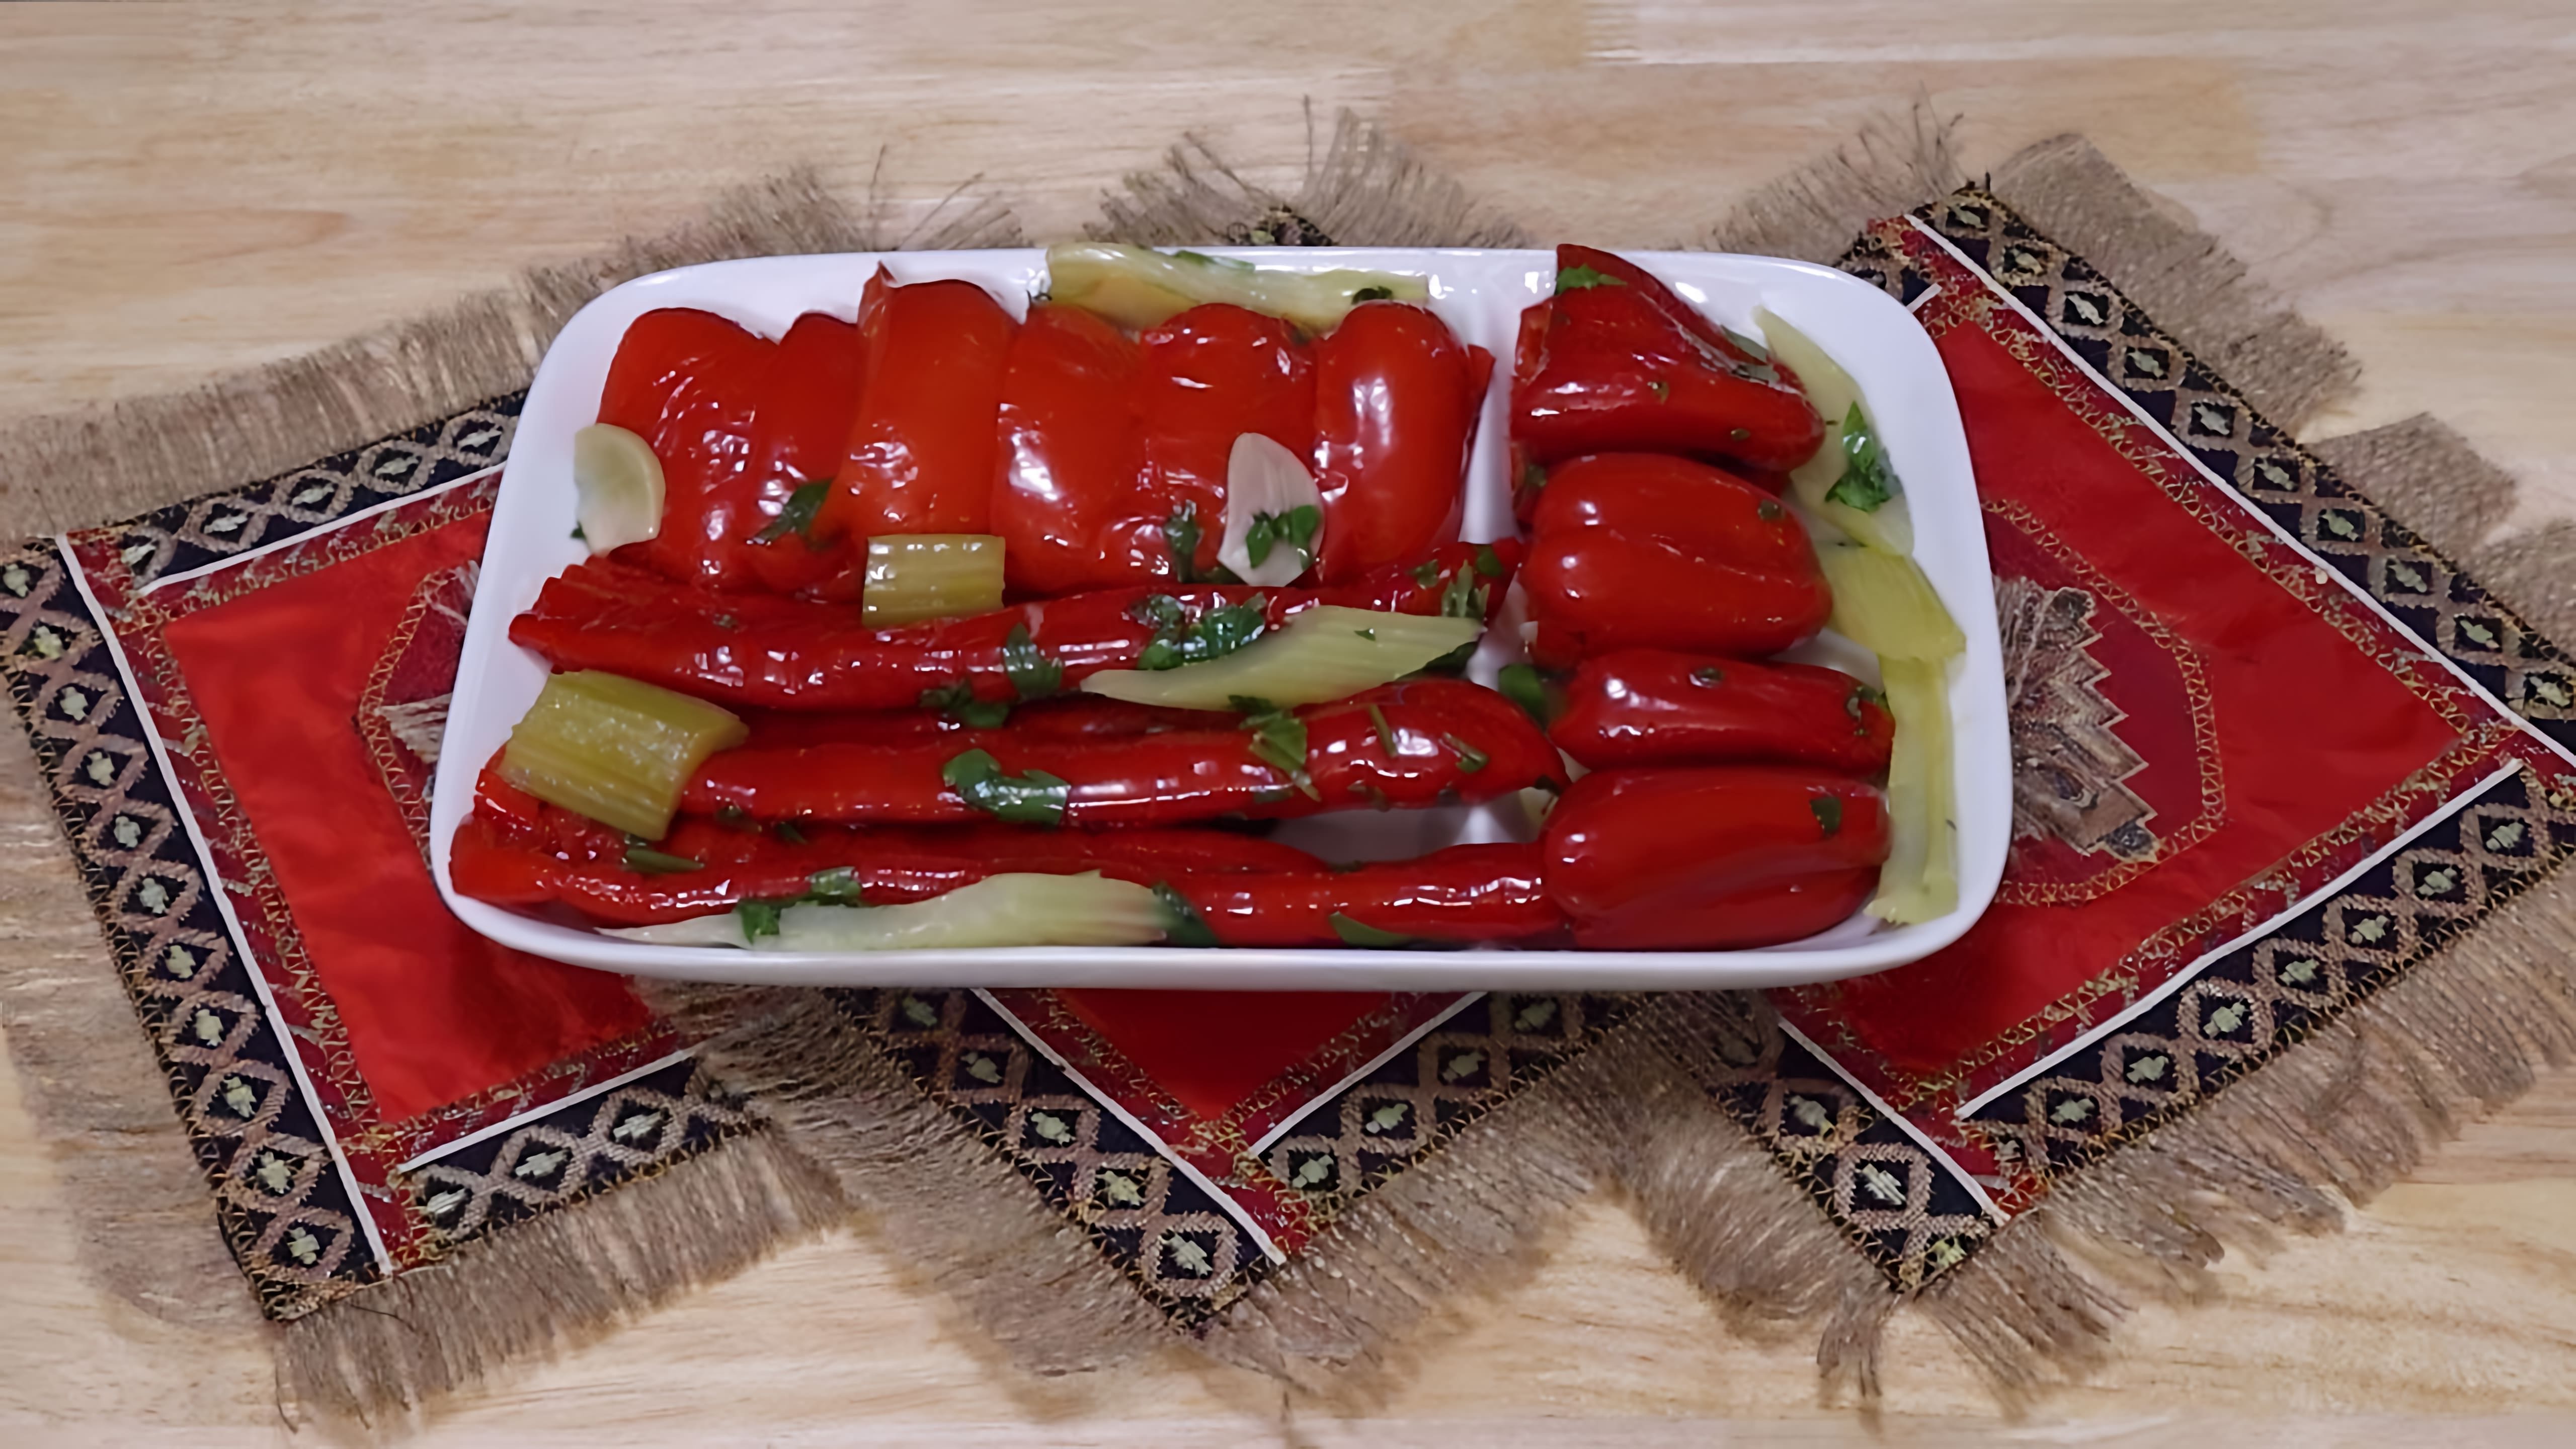 В этом видео демонстрируется процесс приготовления маринованного красного перца по-армянски